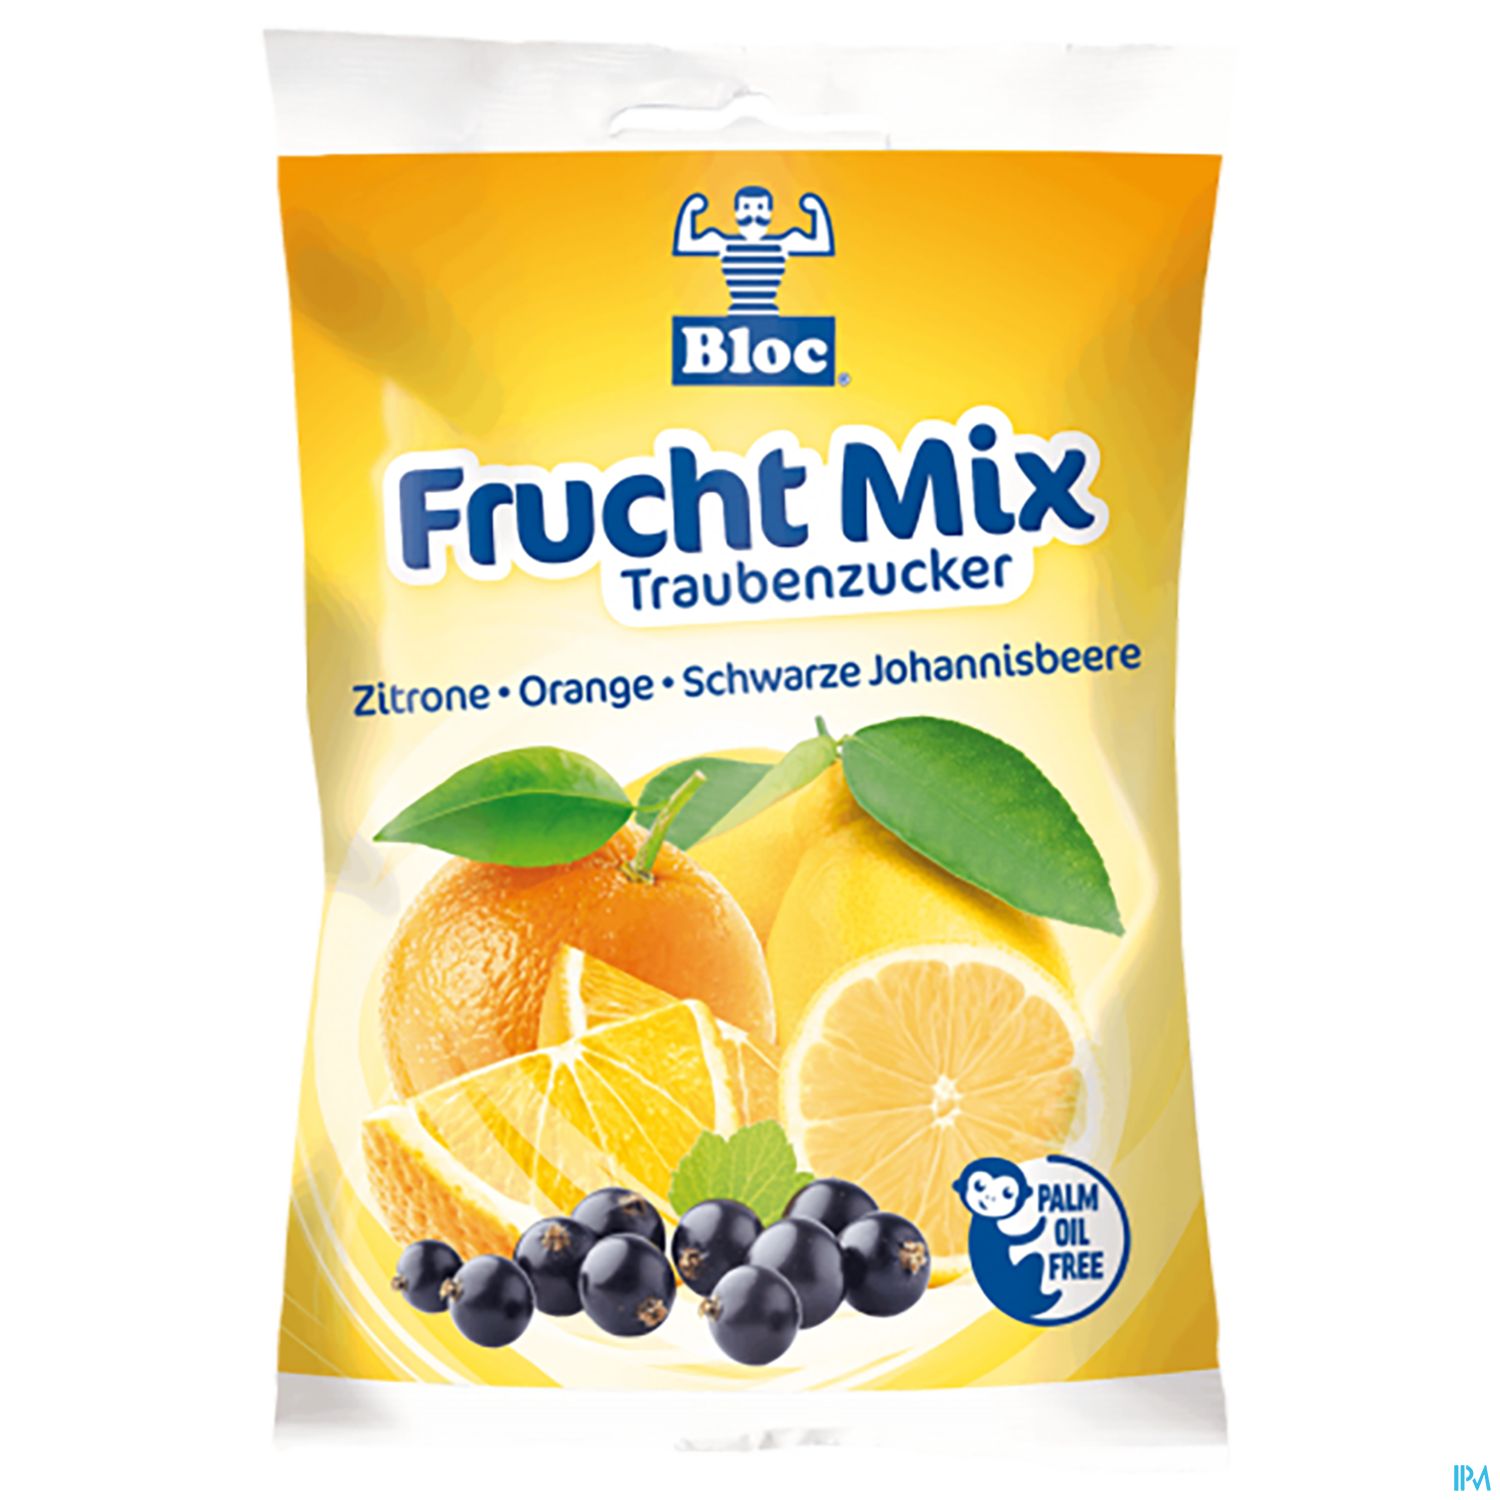 Bloc Traubenzucker Beutel Frucht Mix 75g